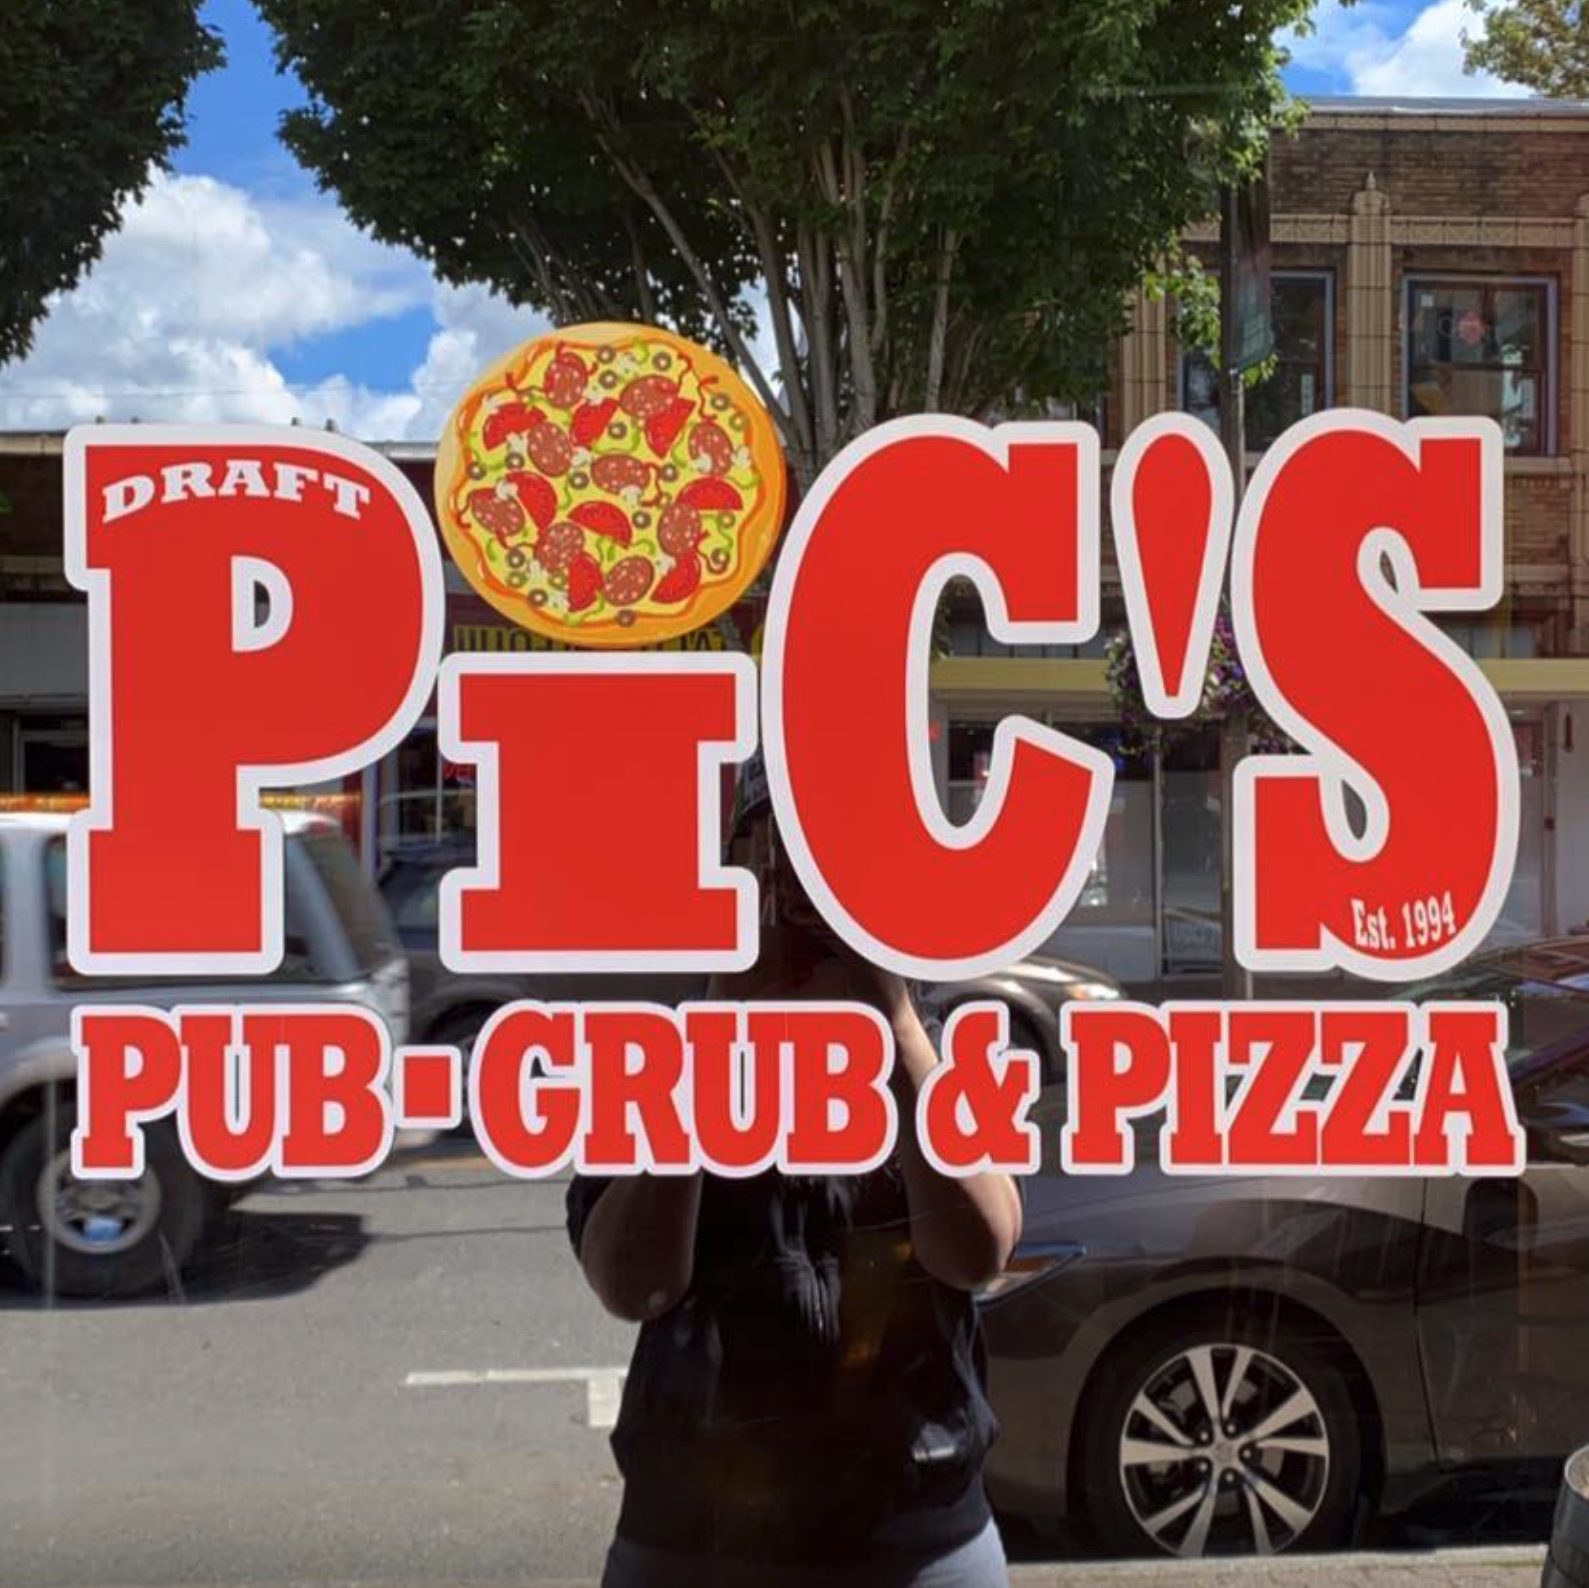 Draft Pic's Pub-Grub & Pizza